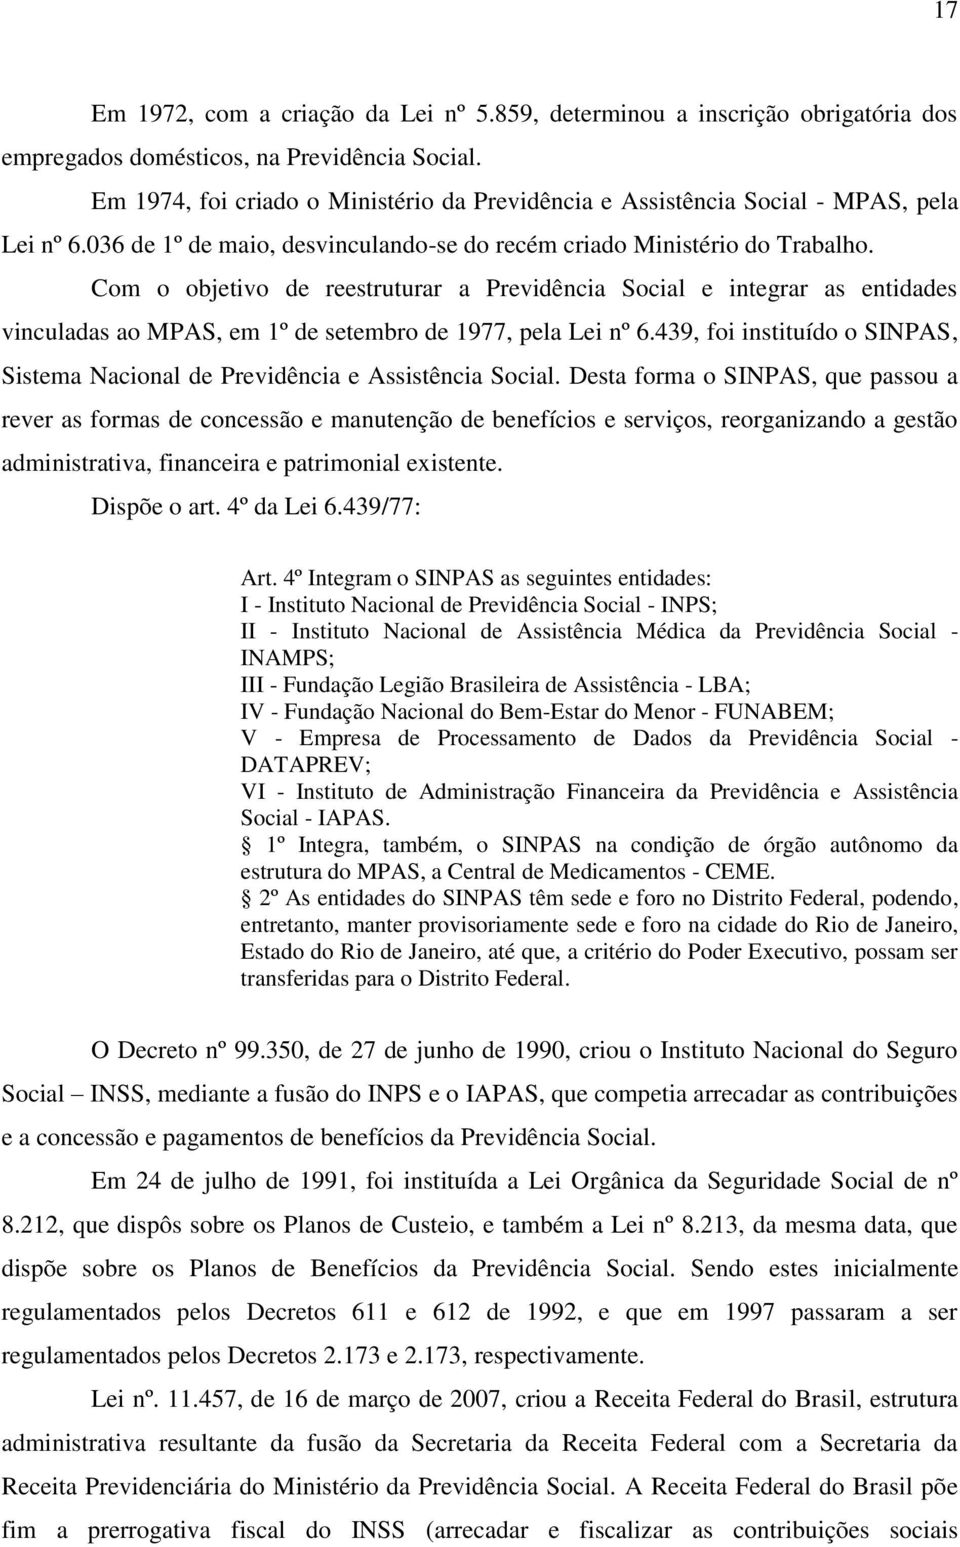 Com o objetivo de reestruturar a Previdência Social e integrar as entidades vinculadas ao MPAS, em 1º de setembro de 1977, pela Lei nº 6.